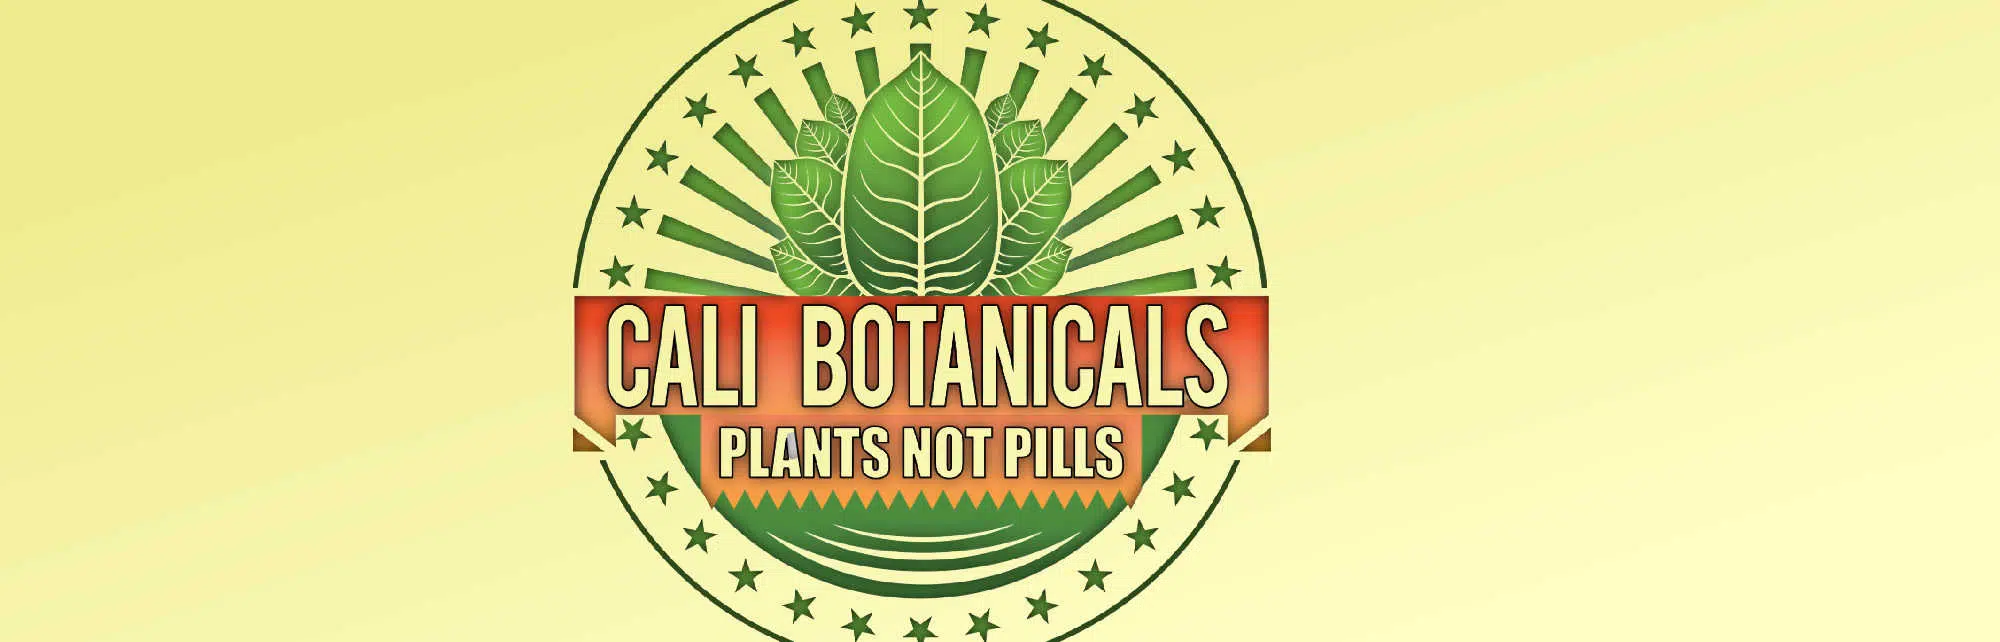 image of cali botanicals logo